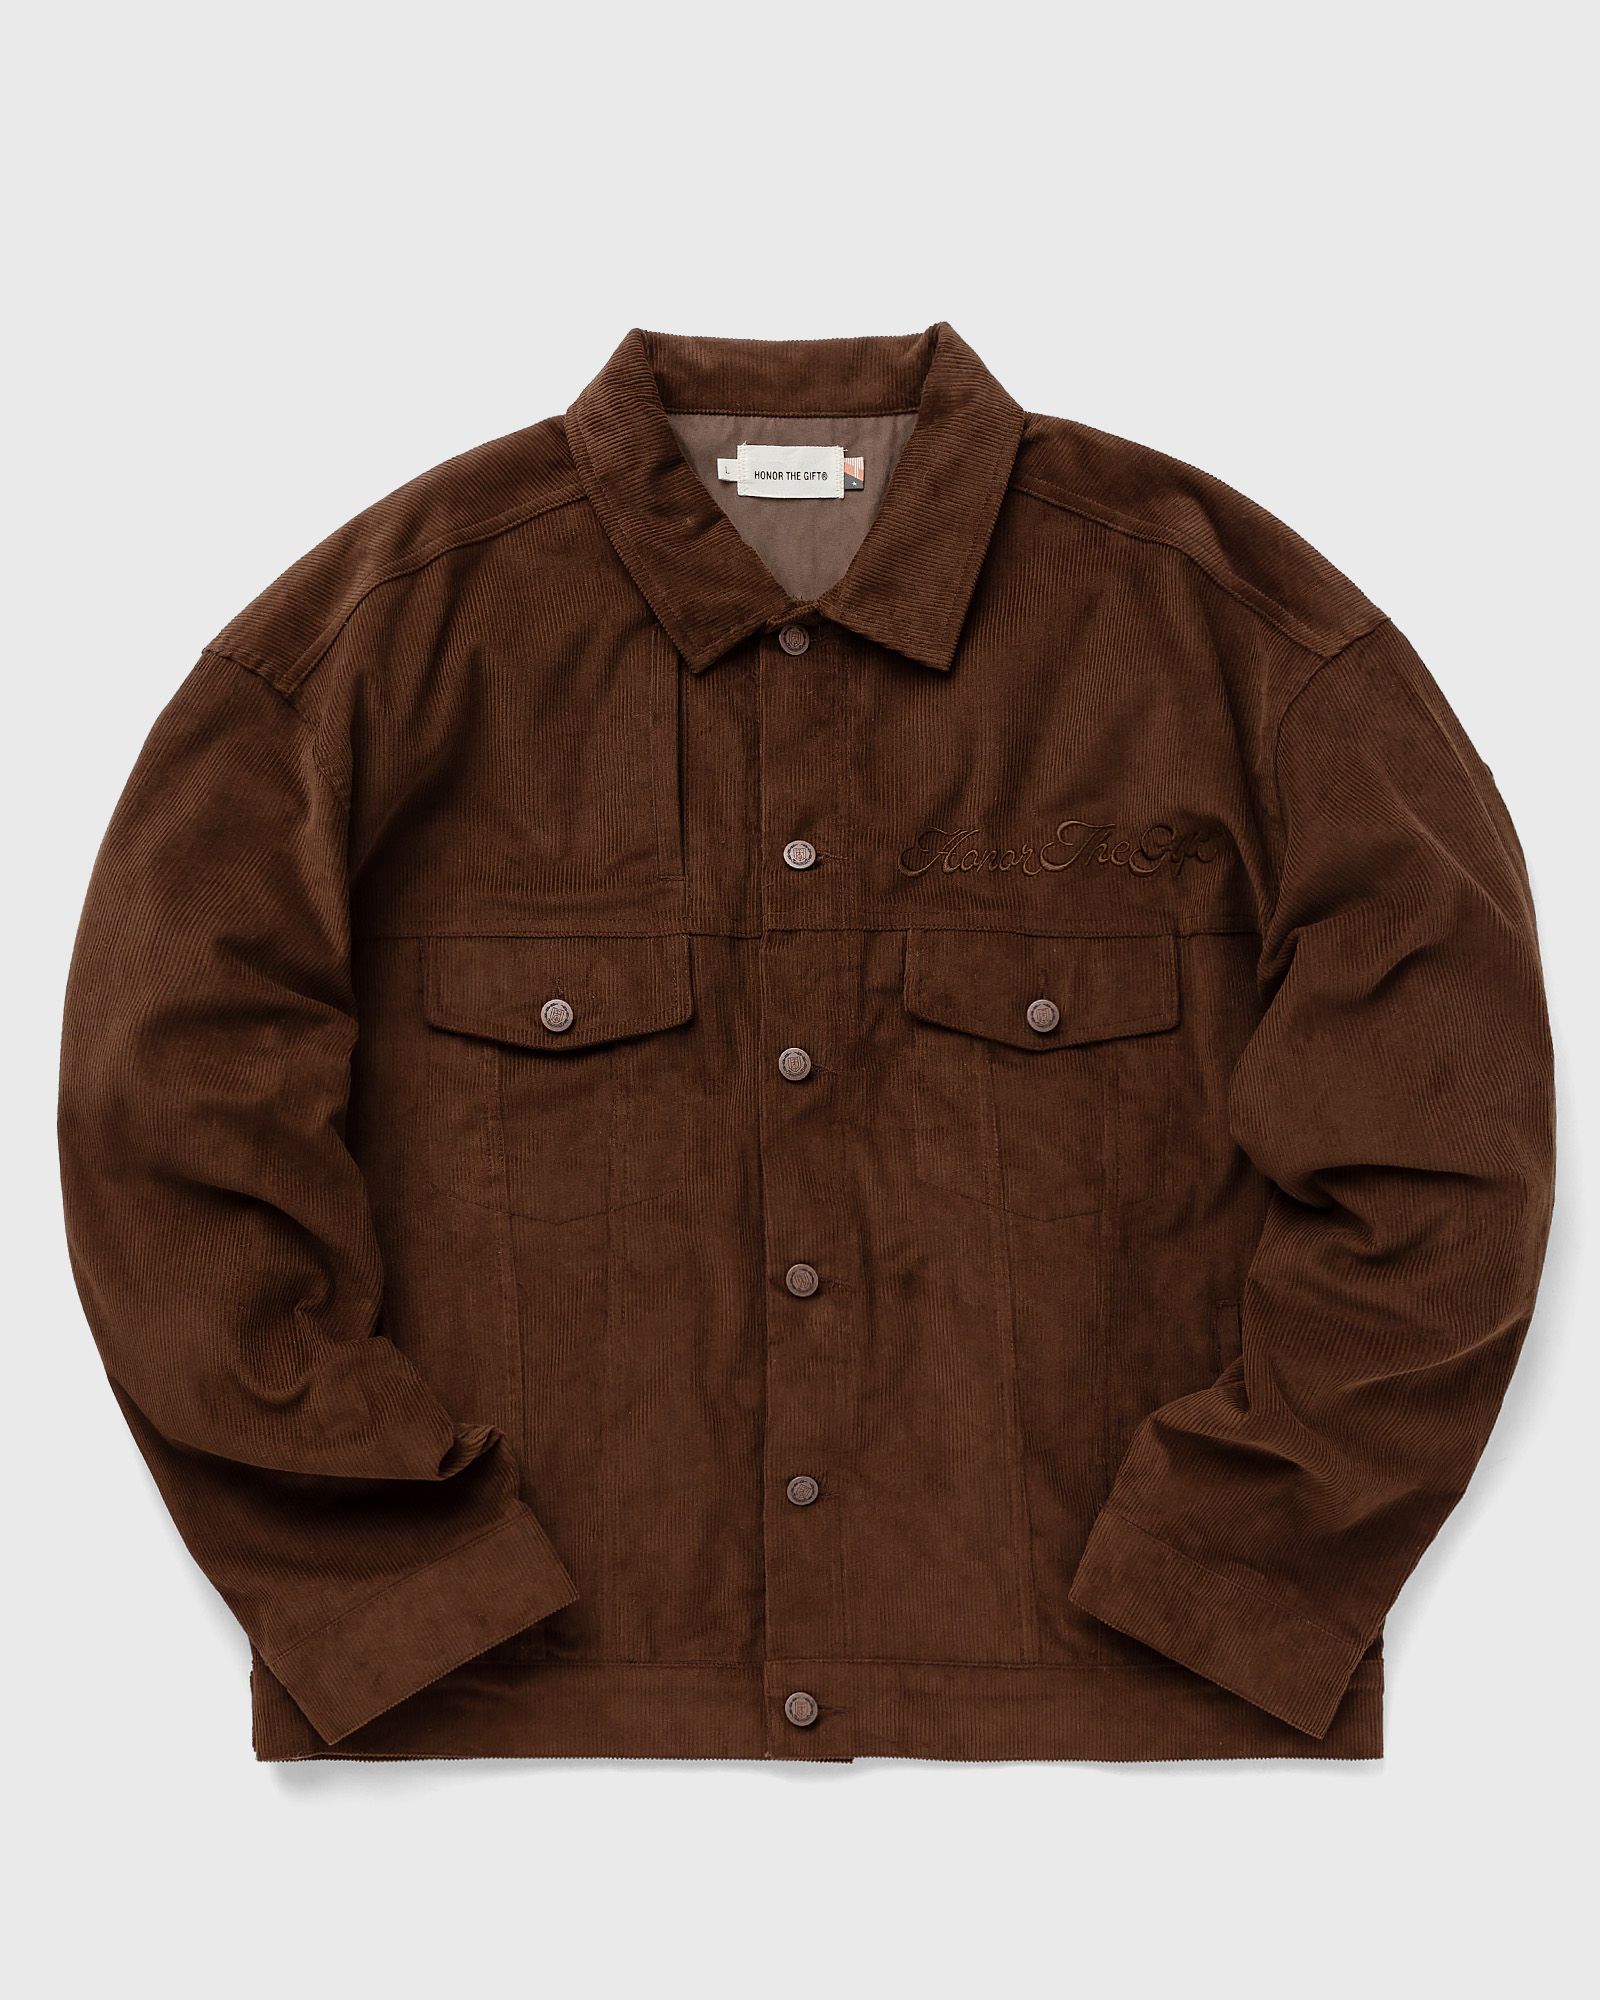 Honor The Gift - htg trucker jacket men denim jackets brown in größe:xl